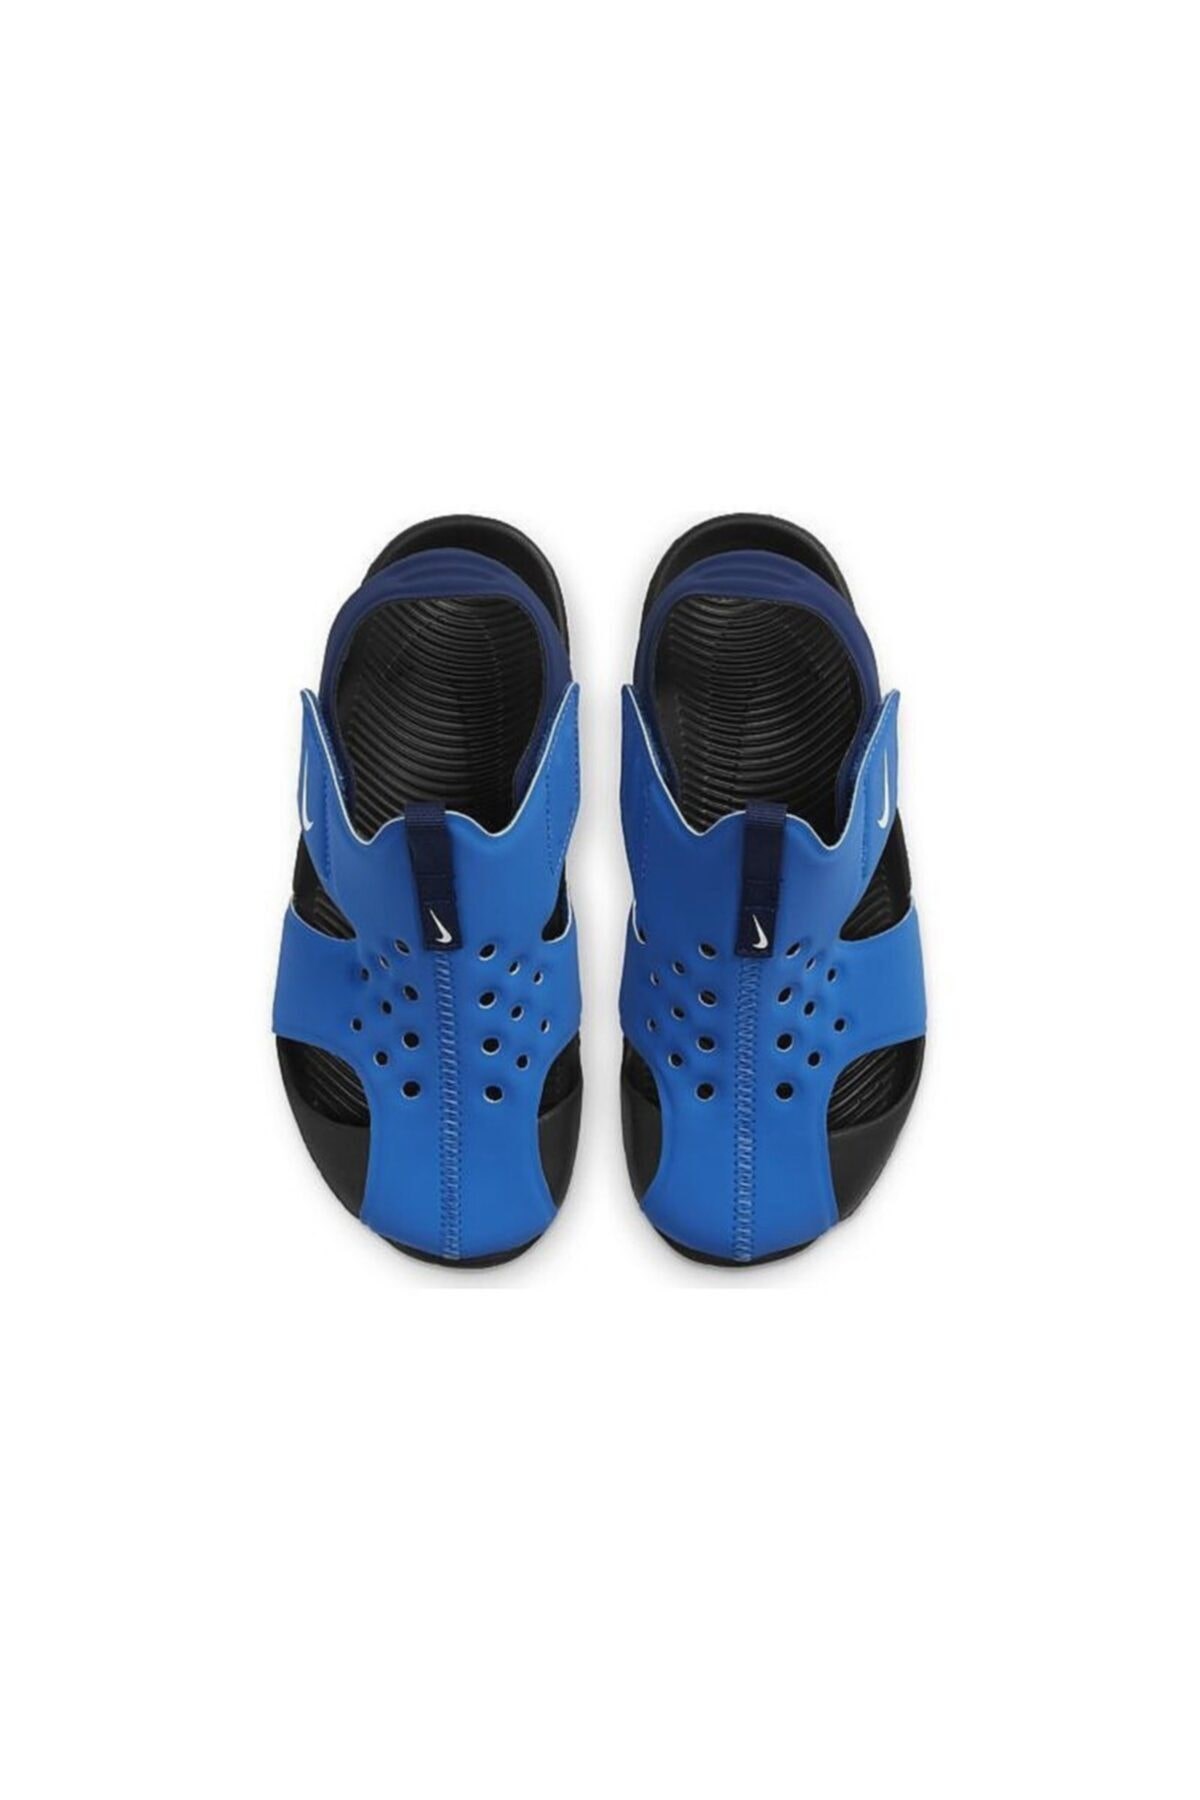 Nike SUNRAY PROTECT 2 (PS) Çocuk Sandalet Ayakkabı 943826-403-MAVİ |  Sahilspor.com